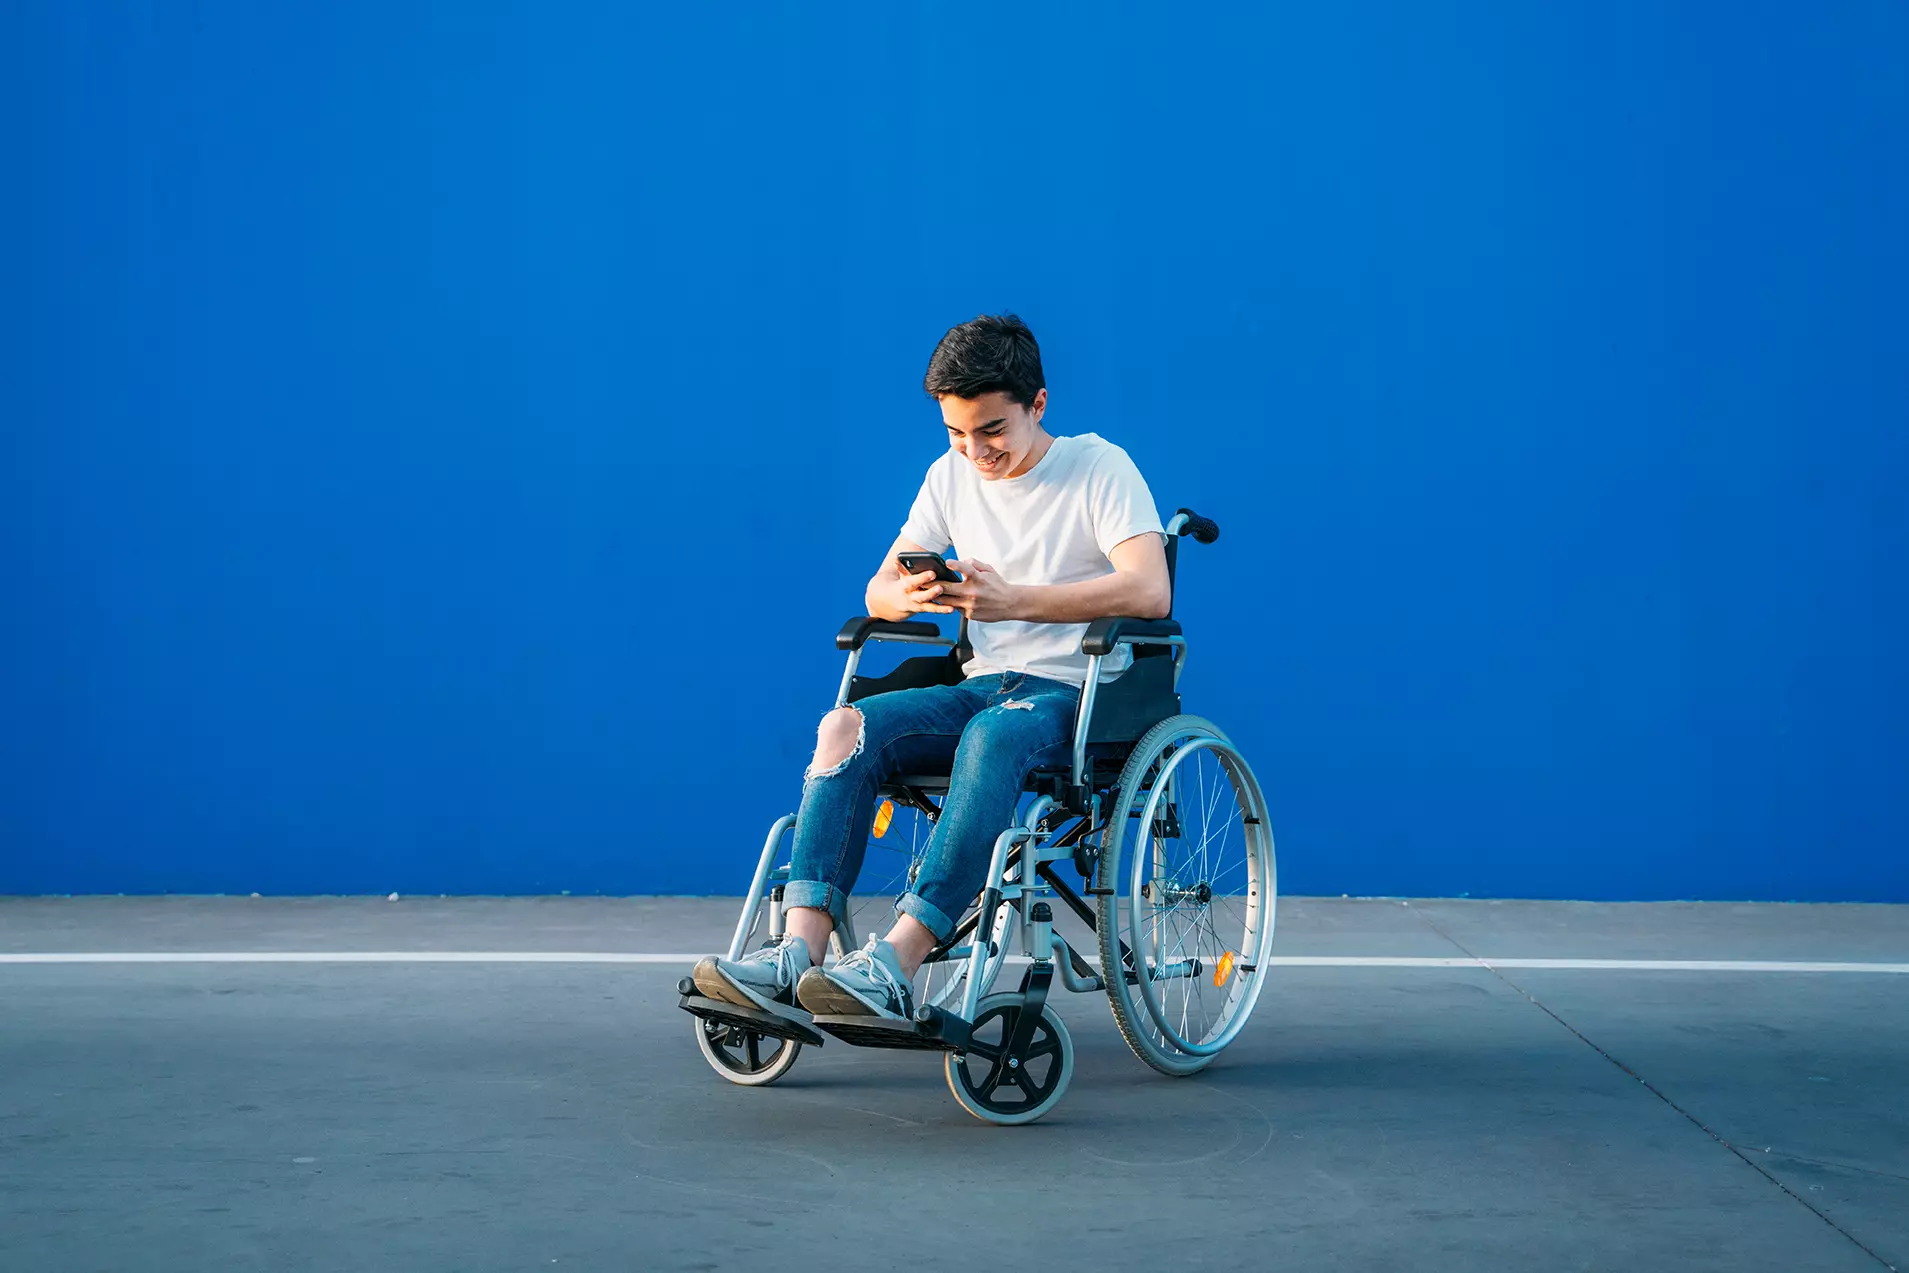 Persona en silla de ruedas usando celular representando que Google lanza nueva aplicación que permite usar sus teléfonos a personas con movilidad limitada.